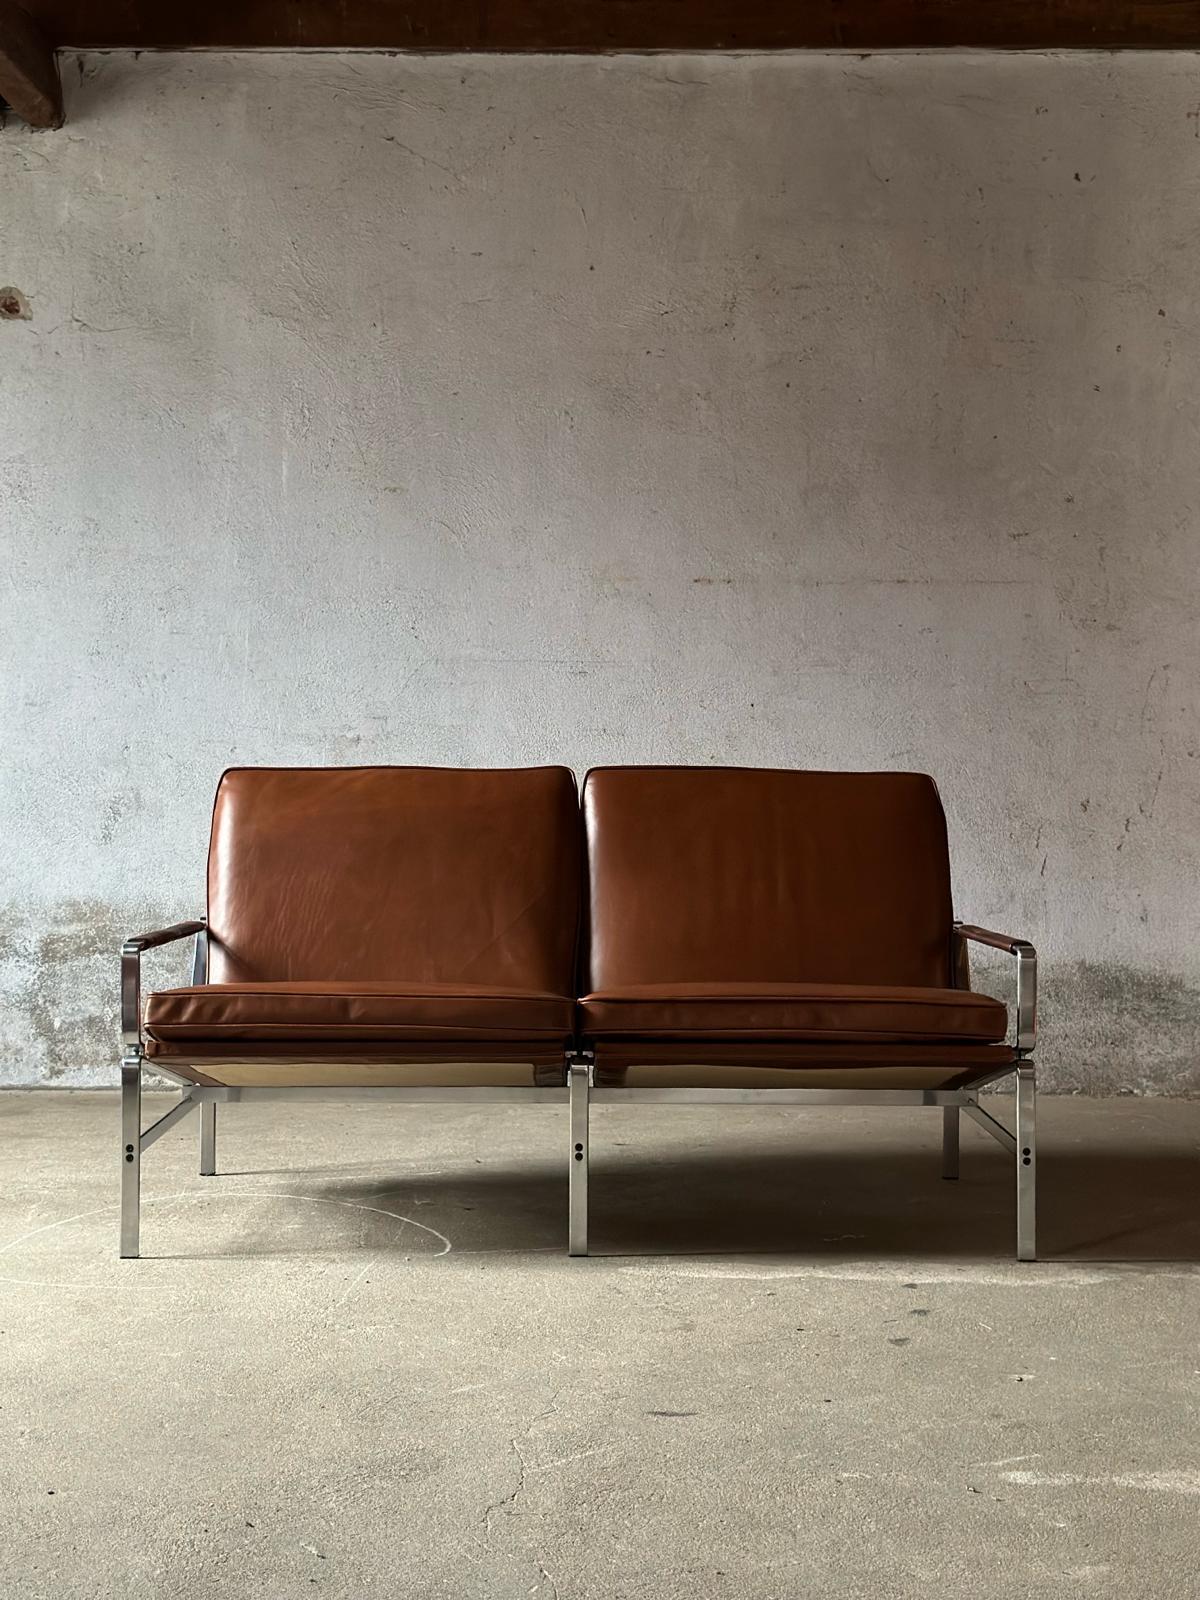 Entdecken Sie die perfekte Kombination aus Stil und Komfort mit dem Zweisitzer-Sofa FK 6720, einem Meisterwerk des Designers Preben Fabricius Jorgen Kastholm. Dieses Sofa wird von Kill International in Dänemark hergestellt und repräsentiert das